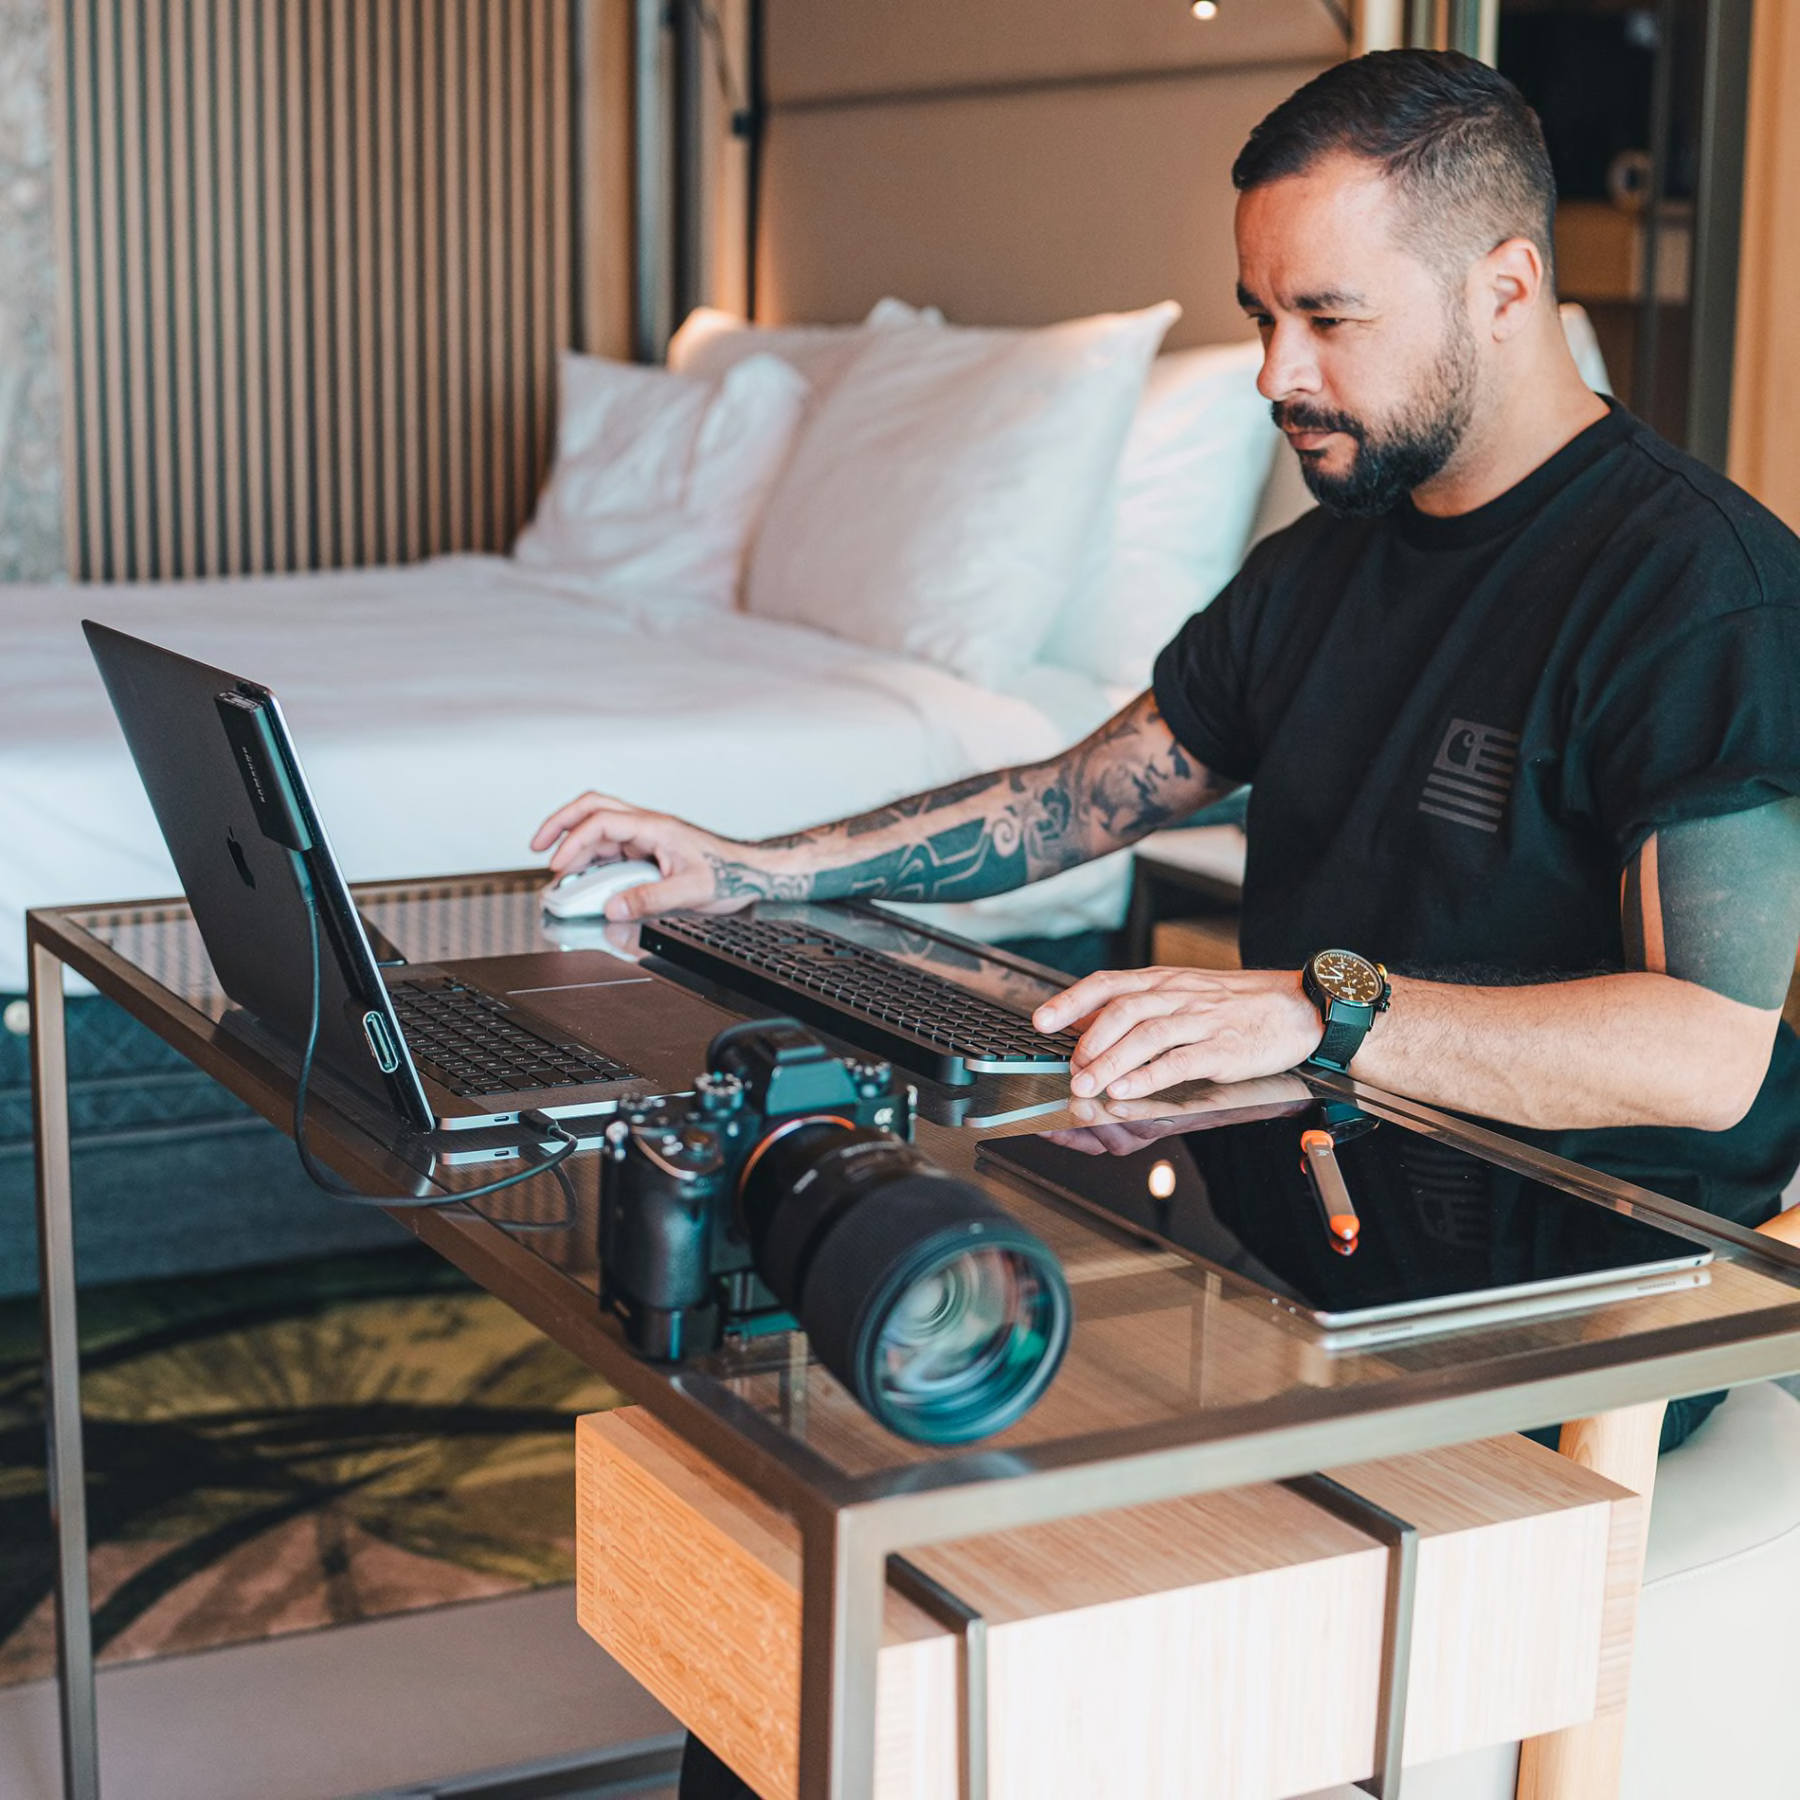 Fotografen Remy Sapuletej med en laptop där han använder ett tangentbord och en mus som är särskilt avsedda för arbetet